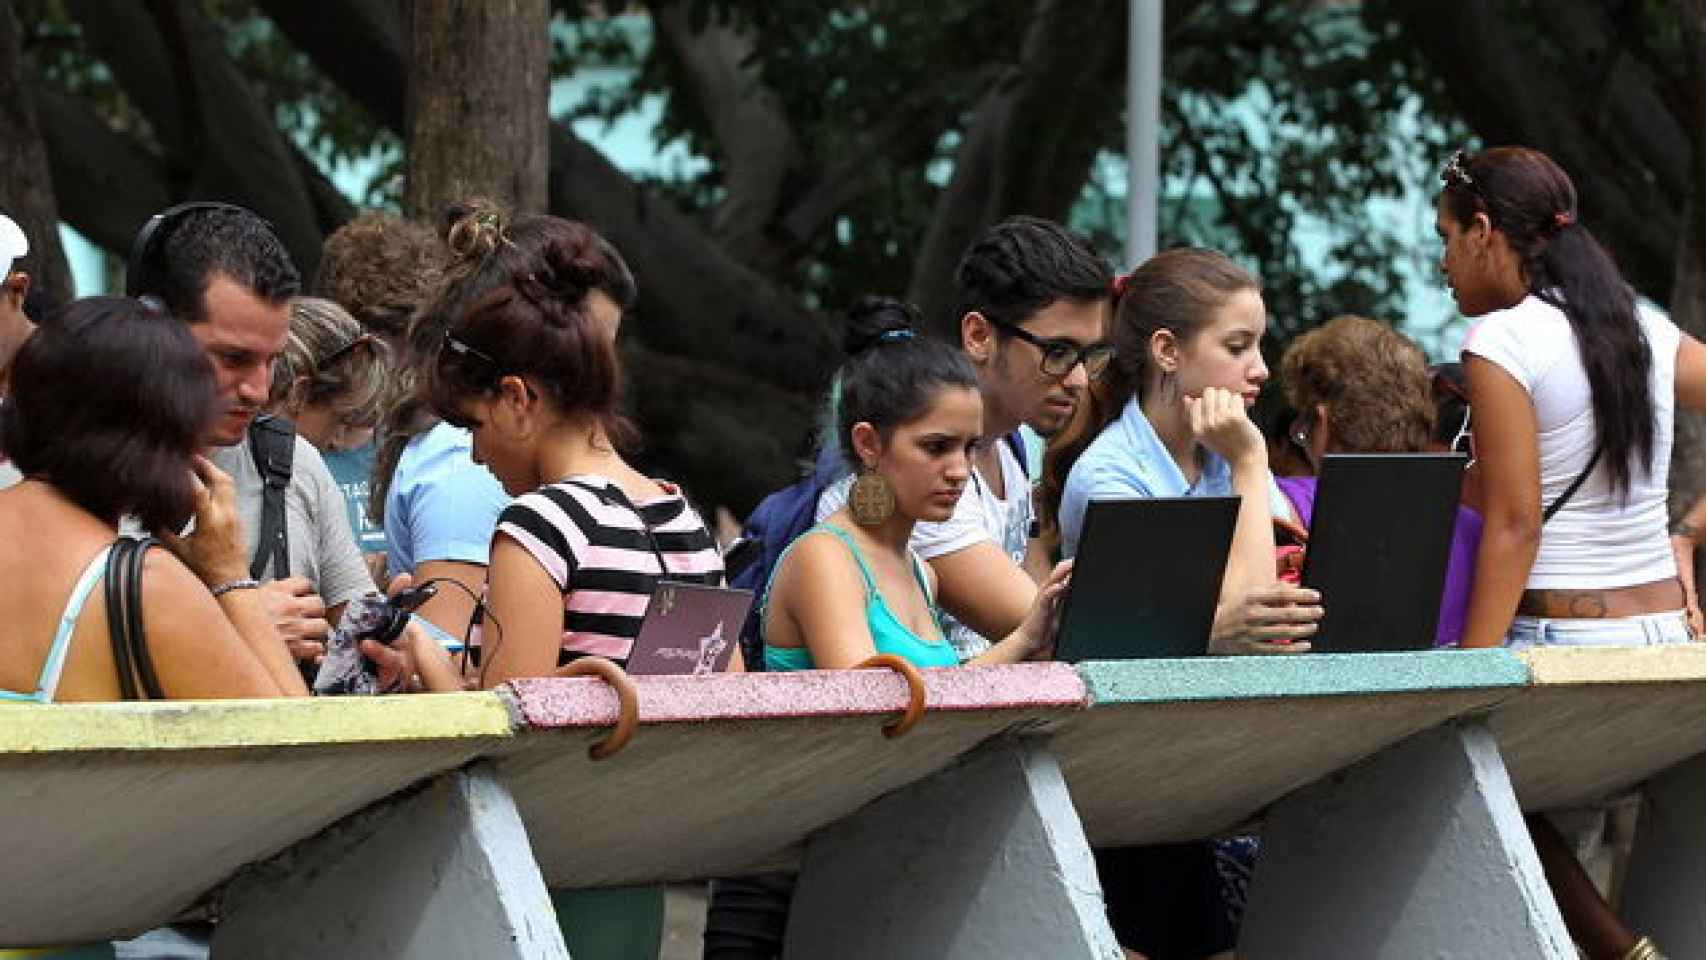 En los puntos wifi de La Habana, se concentran decenas de personas.